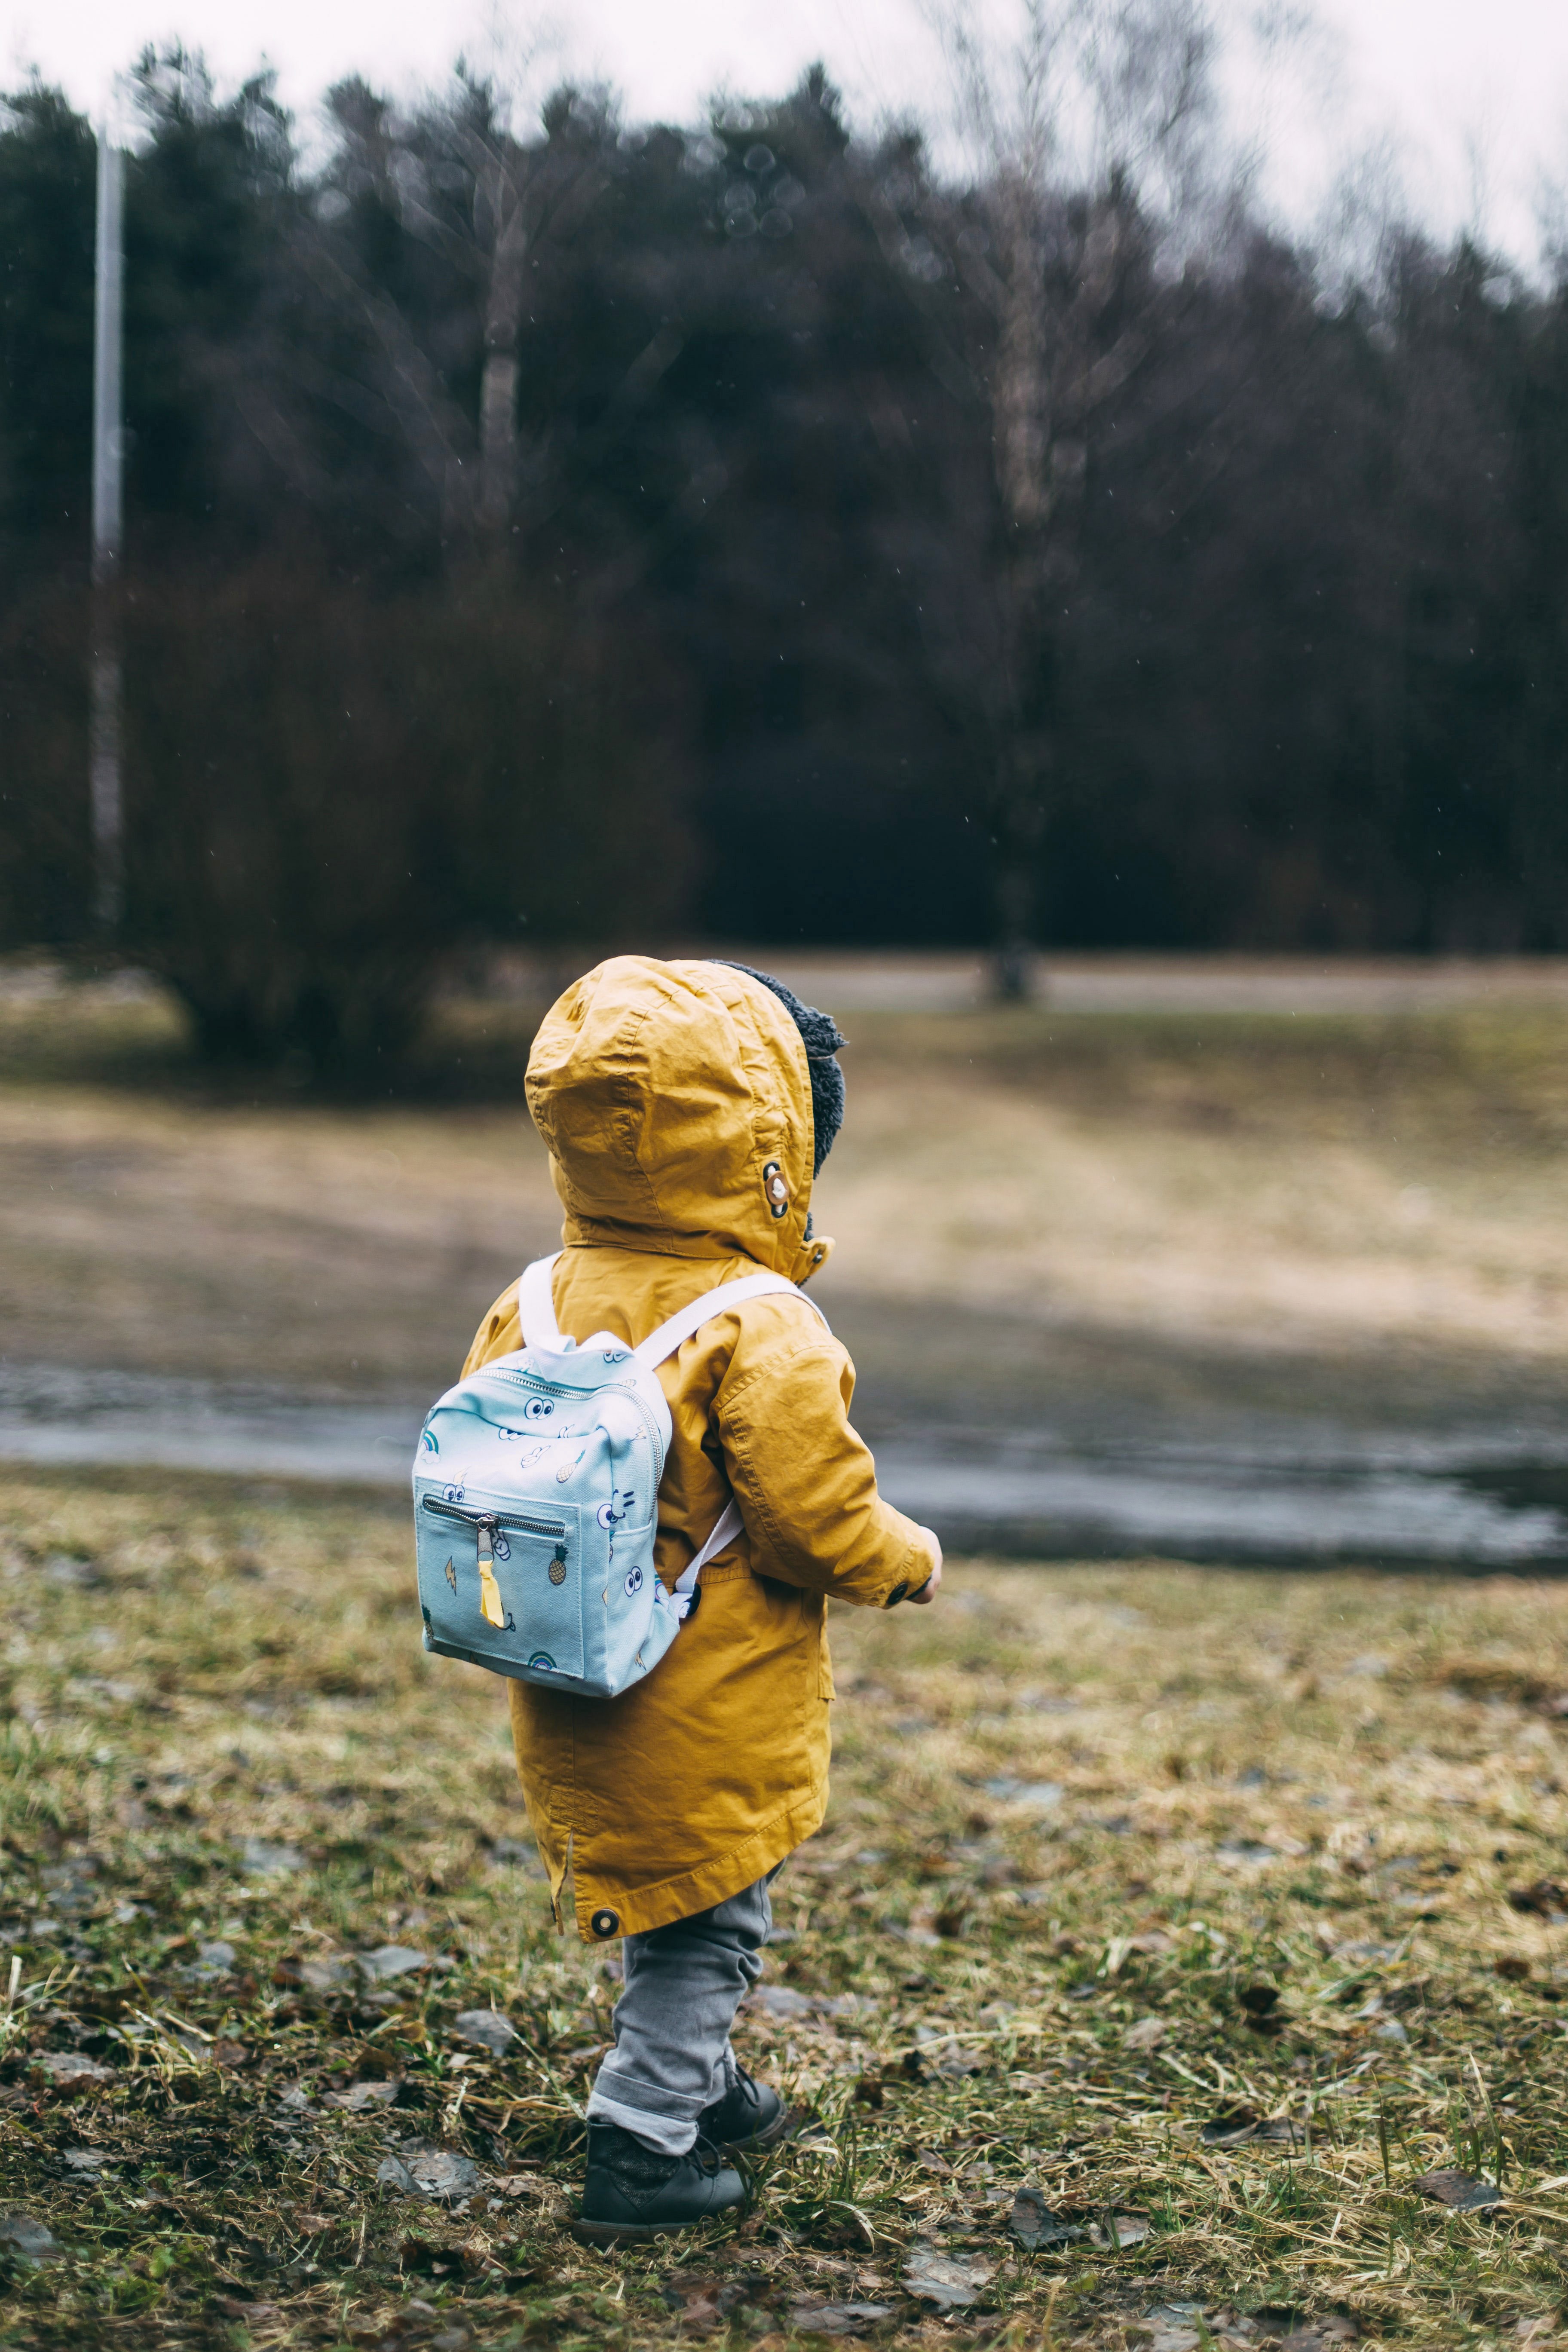 Ett barn som går ensam på en äng. Barnet har en gul jacka på sig och en ljusblå ryggsäck. I bakgrunden syns ett skogsparti. Vädret är grått.  